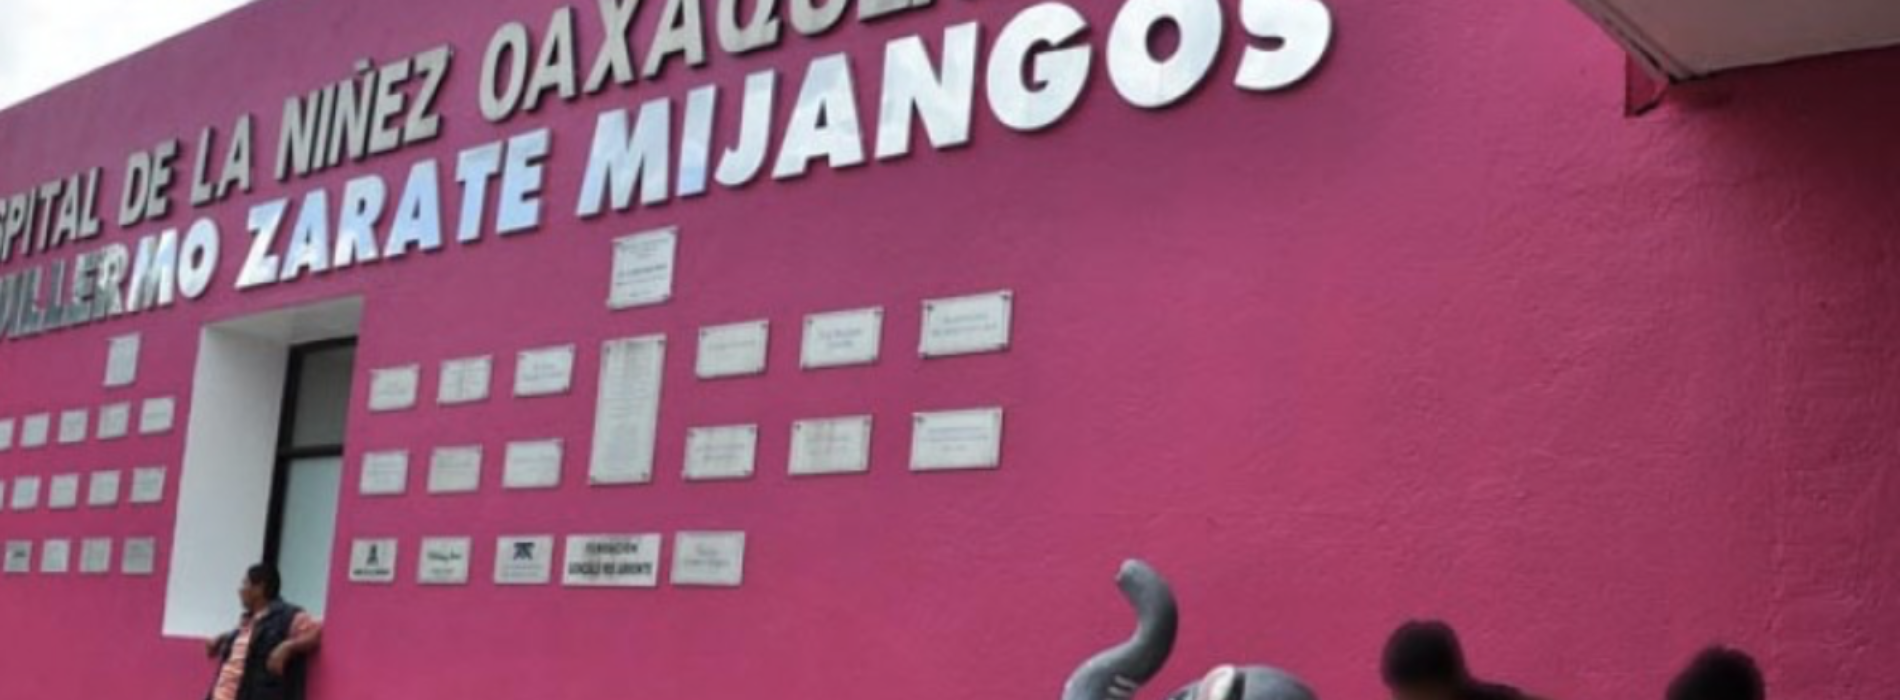 Gobierno de Oaxaca desestima denuncia de desabasto oncológico en Hospital de la Niñez; es la logística